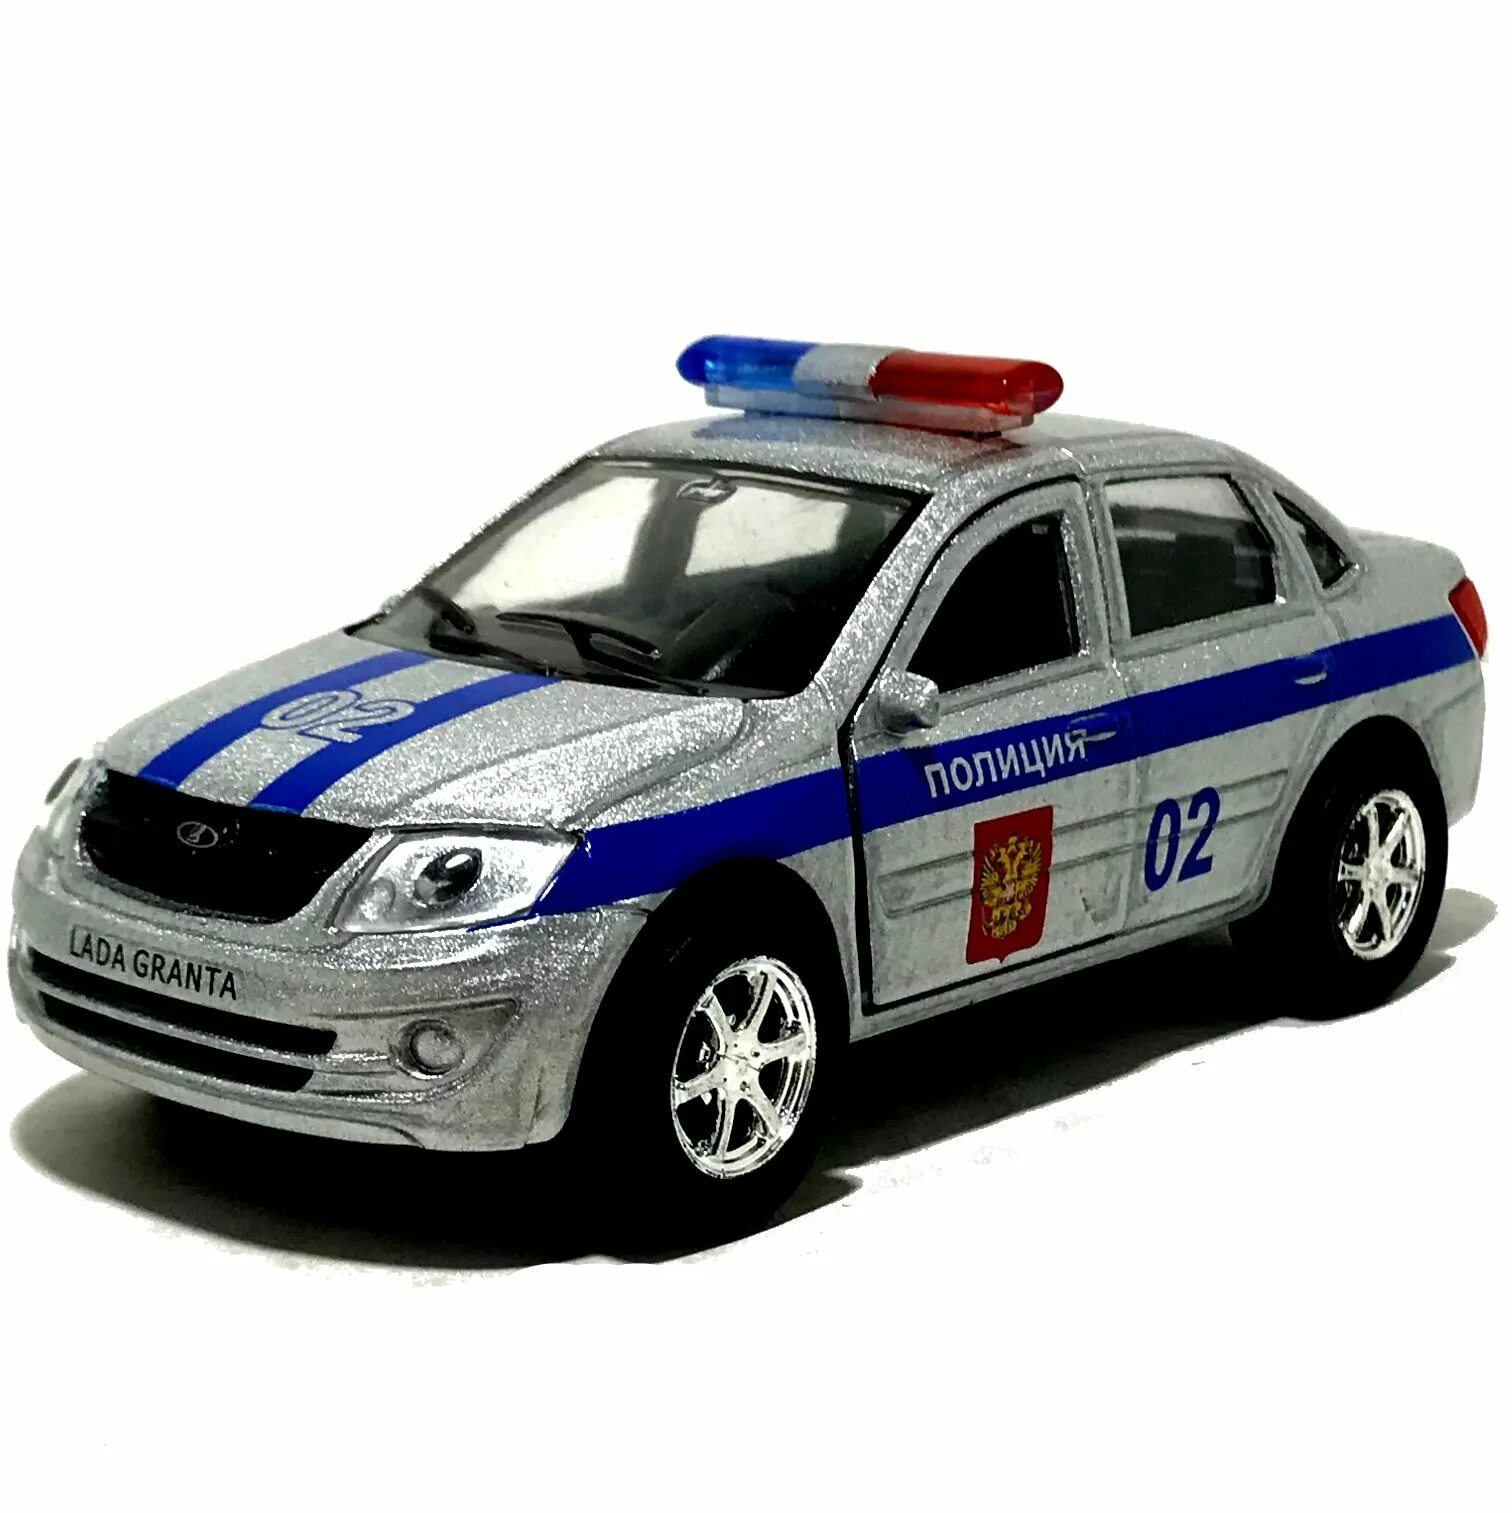 Полицейская машинка картинка. Игрушечная Полицейская машинка ВАЗ 2115. Модель машины HWPD Police.